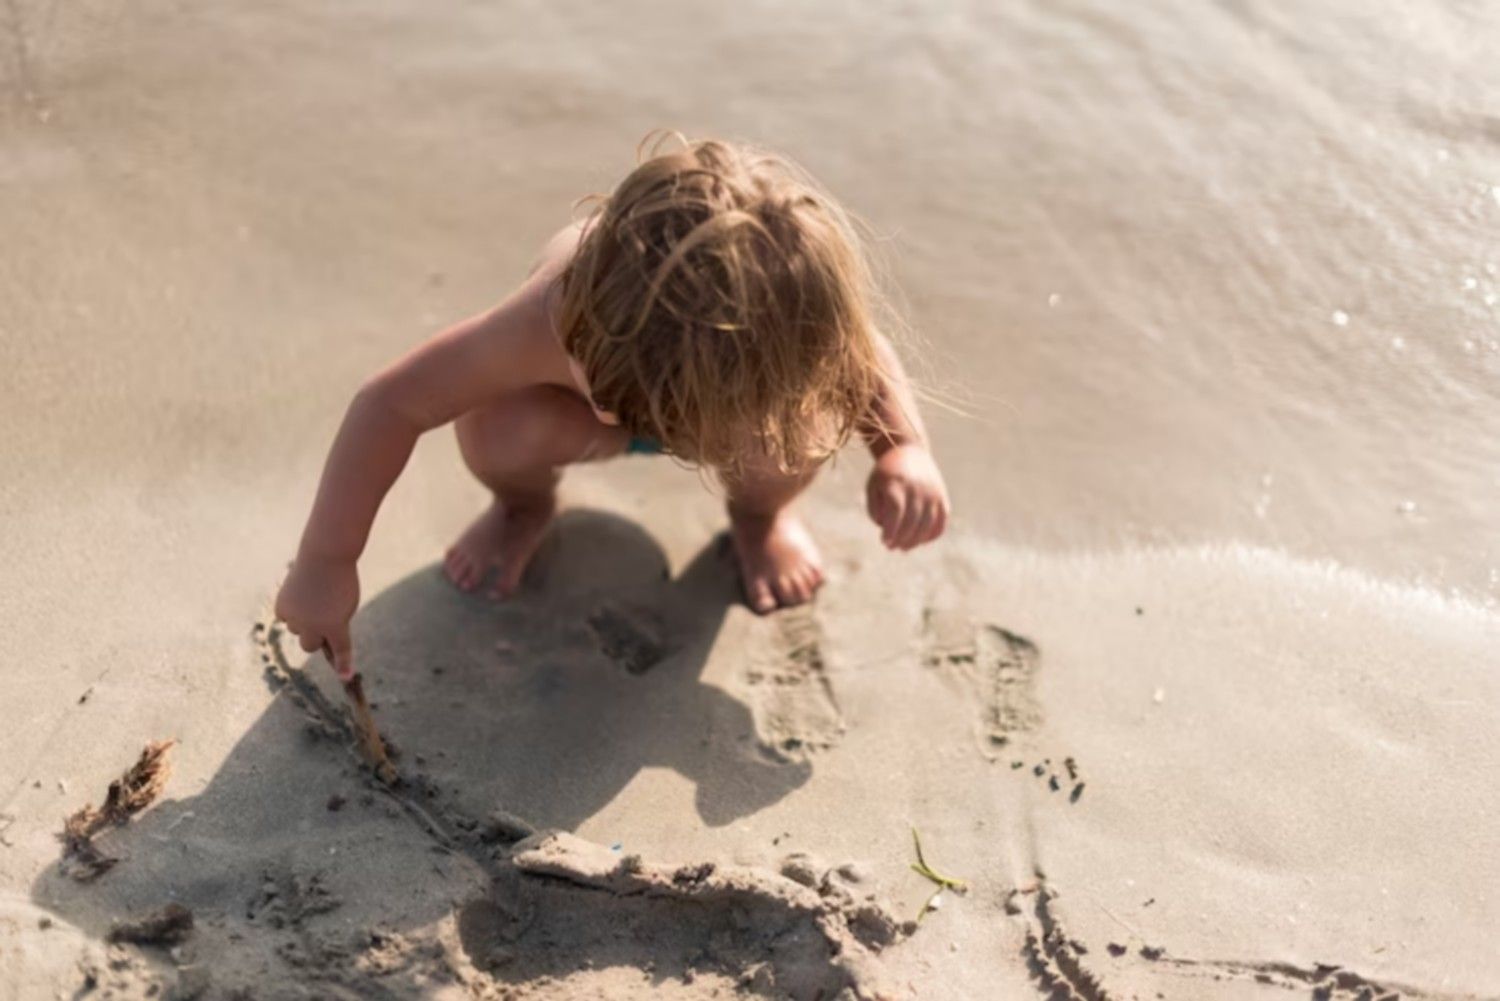 Un niño jugando en la arena.